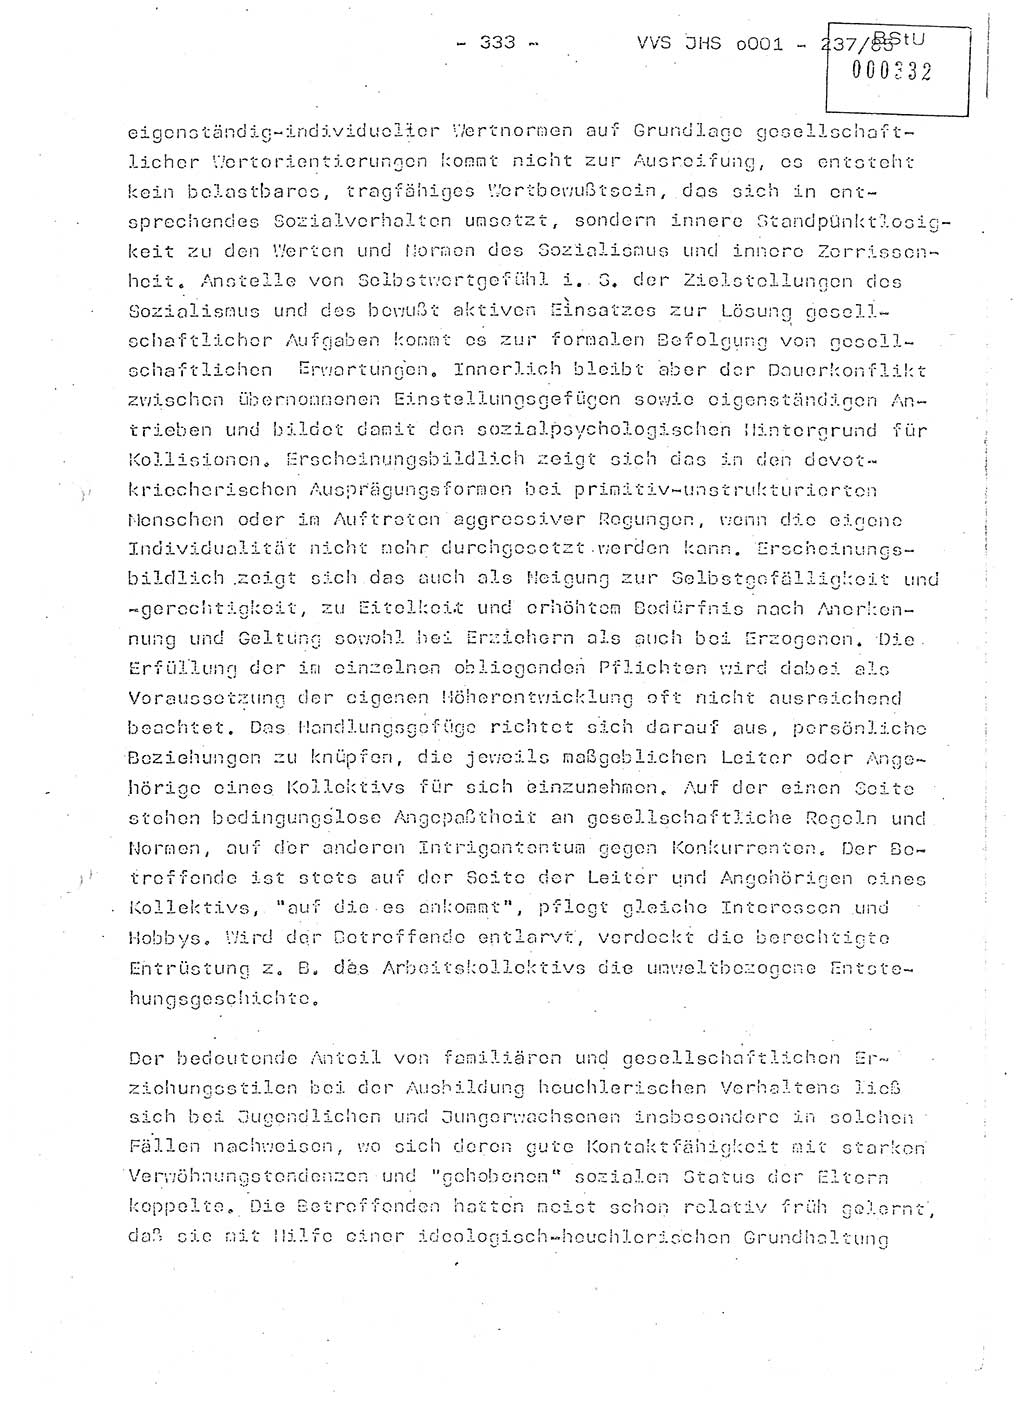 Dissertation Oberstleutnant Peter Jakulski (JHS), Oberstleutnat Christian Rudolph (HA Ⅸ), Major Horst Böttger (ZMD), Major Wolfgang Grüneberg (JHS), Major Albert Meutsch (JHS), Ministerium für Staatssicherheit (MfS) [Deutsche Demokratische Republik (DDR)], Juristische Hochschule (JHS), Vertrauliche Verschlußsache (VVS) o001-237/85, Potsdam 1985, Seite 333 (Diss. MfS DDR JHS VVS o001-237/85 1985, S. 333)